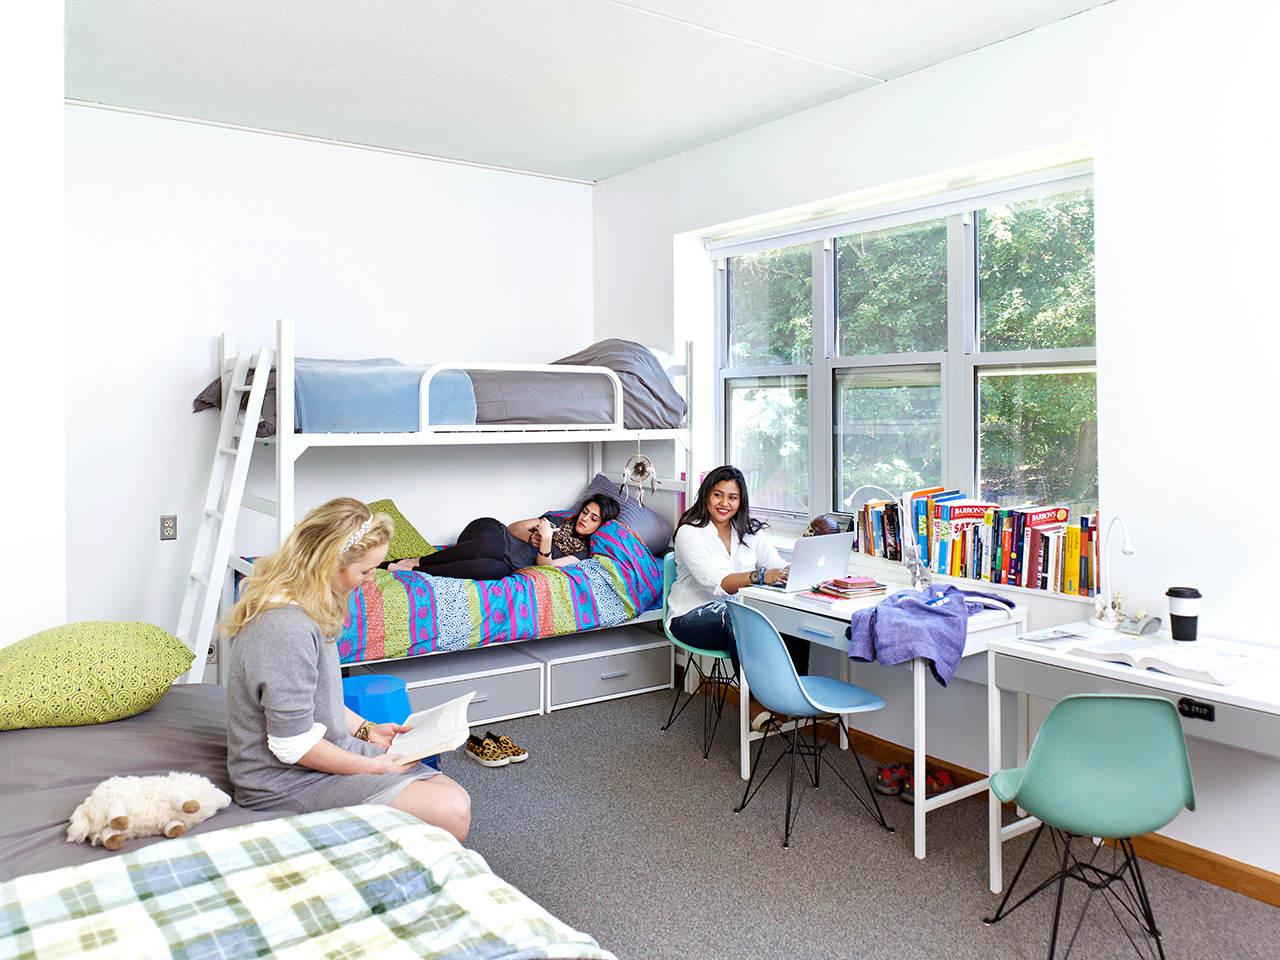 Типы жилья для студентов в США: обзор и сравнение